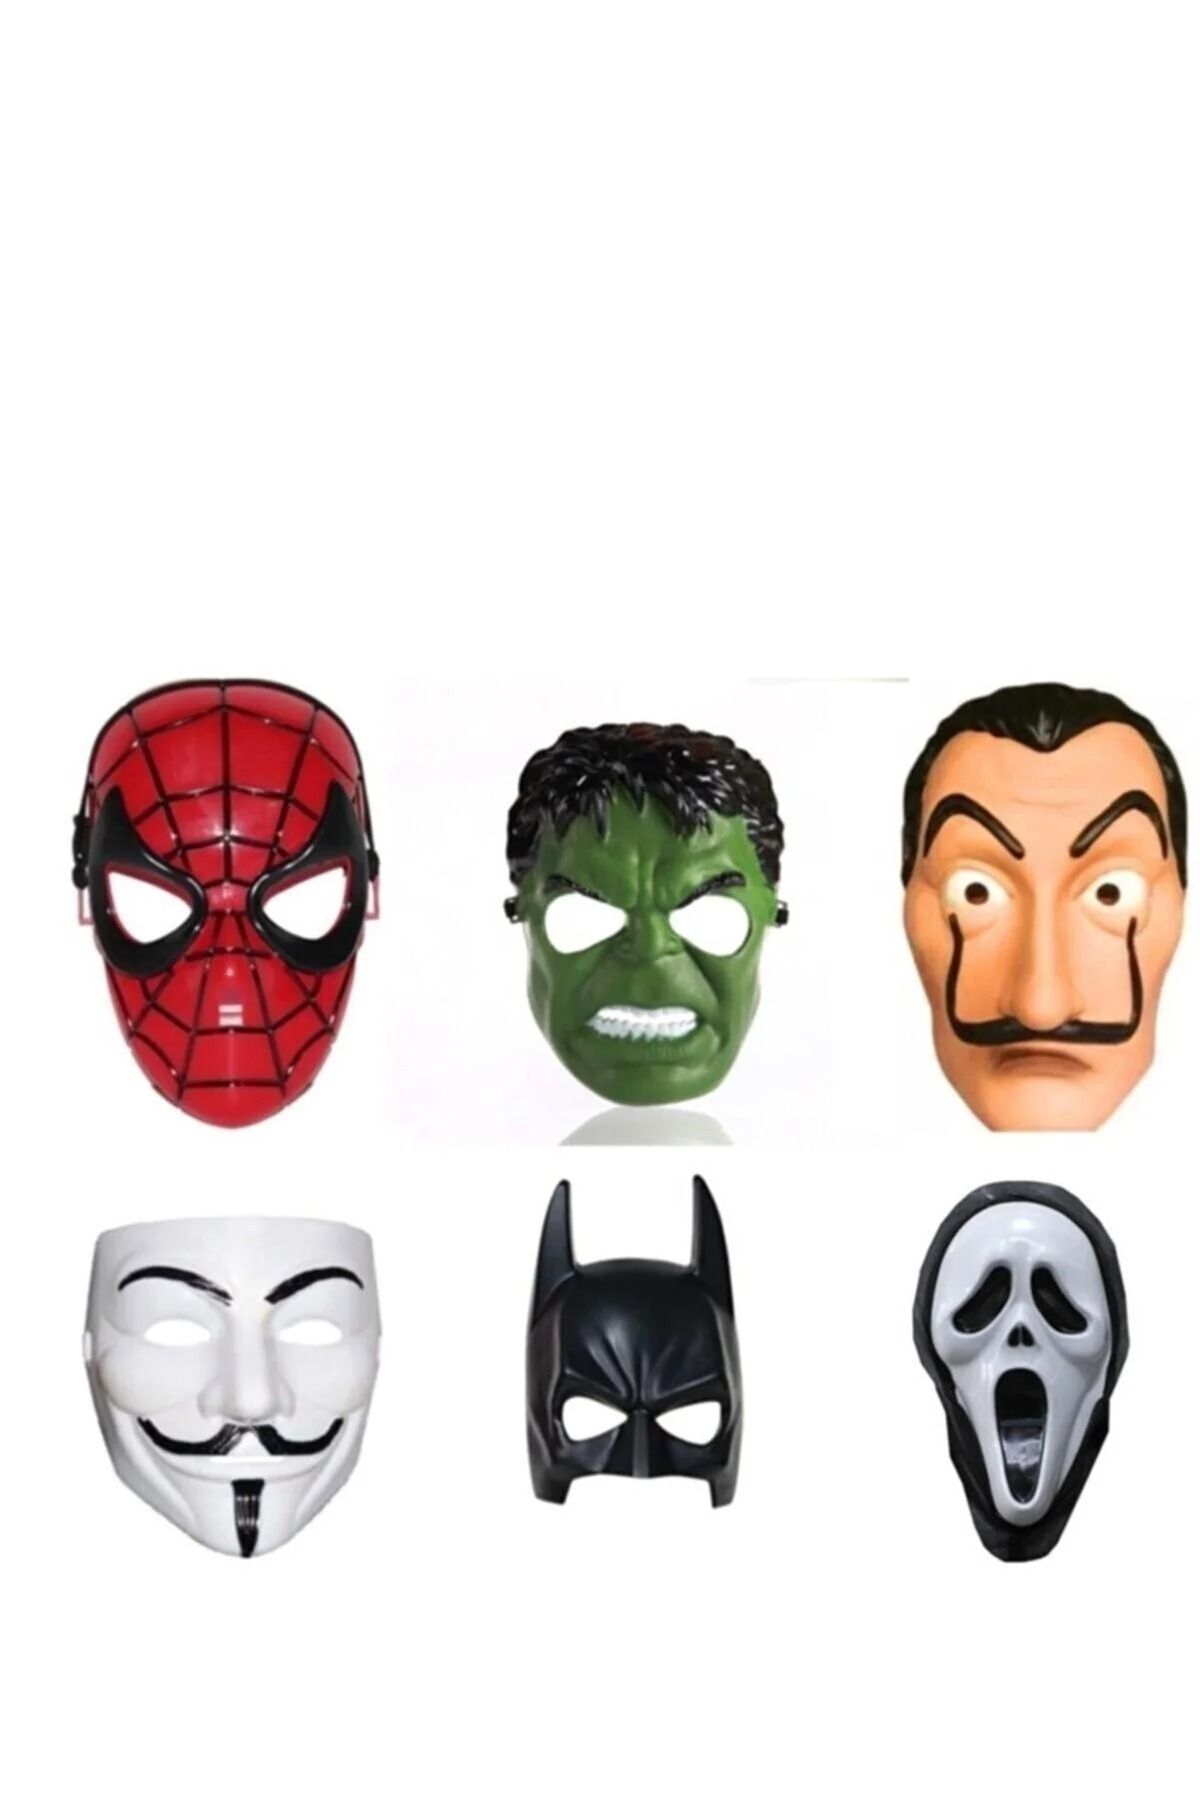 Limitless Trade Maske Örümcek Adam Hulk Salvador Vandetta Batman Ve Çığlık Maskesi 6'lı